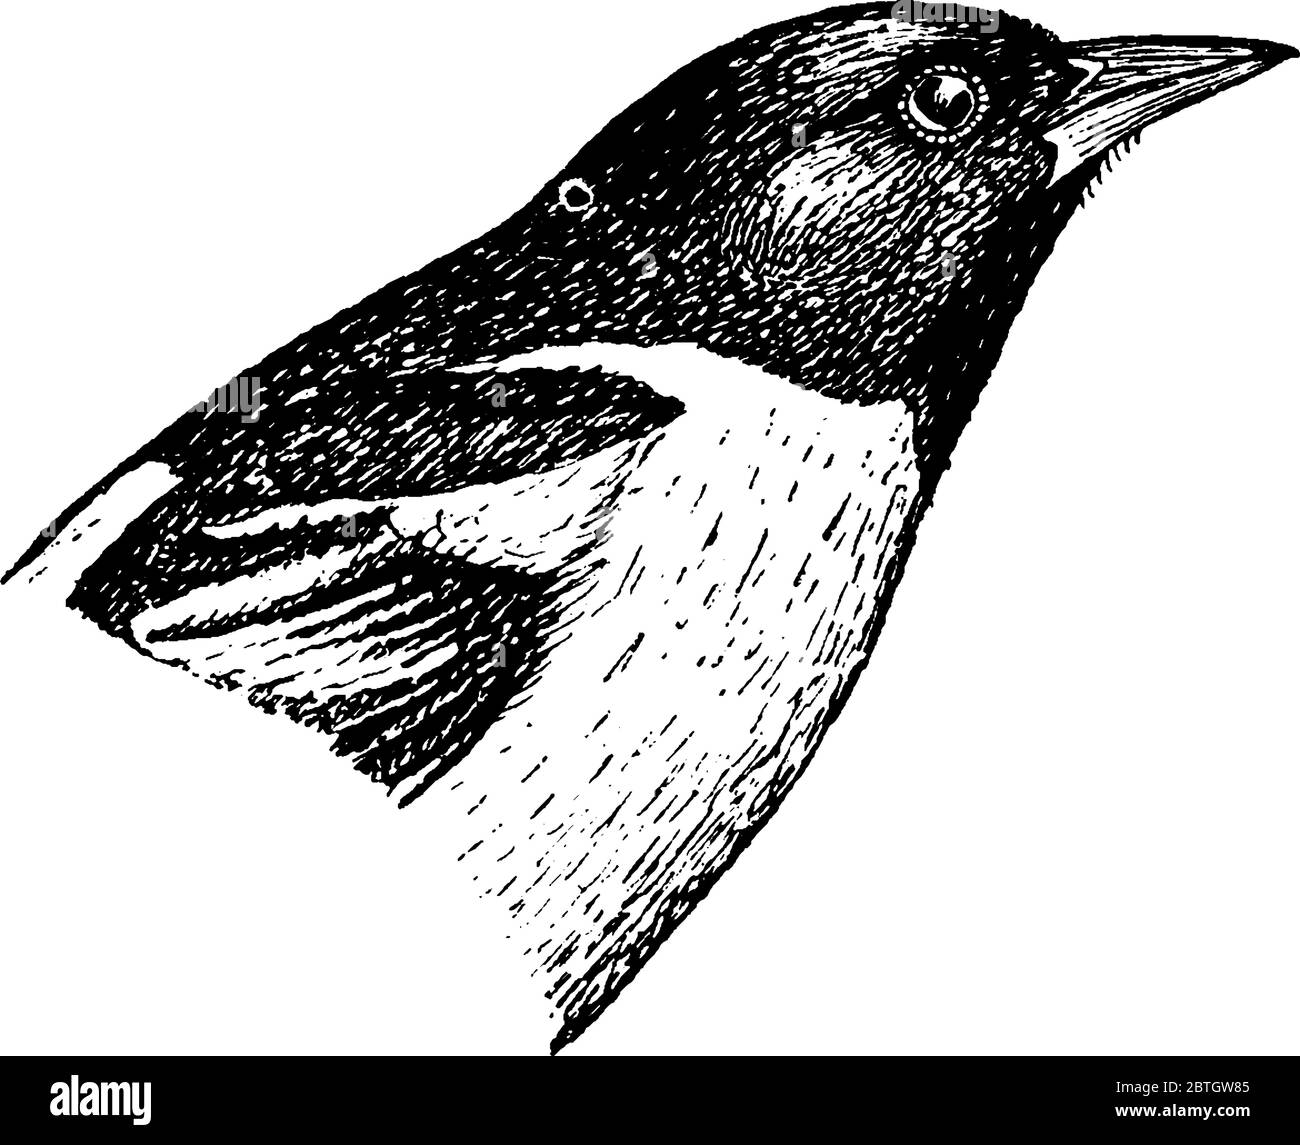 Il Baltimore Oriole, un piccolo uccello nero icteride. L'uccello di stato del Maryland, disegno di linea vintage o illustrazione di incisione. Illustrazione Vettoriale